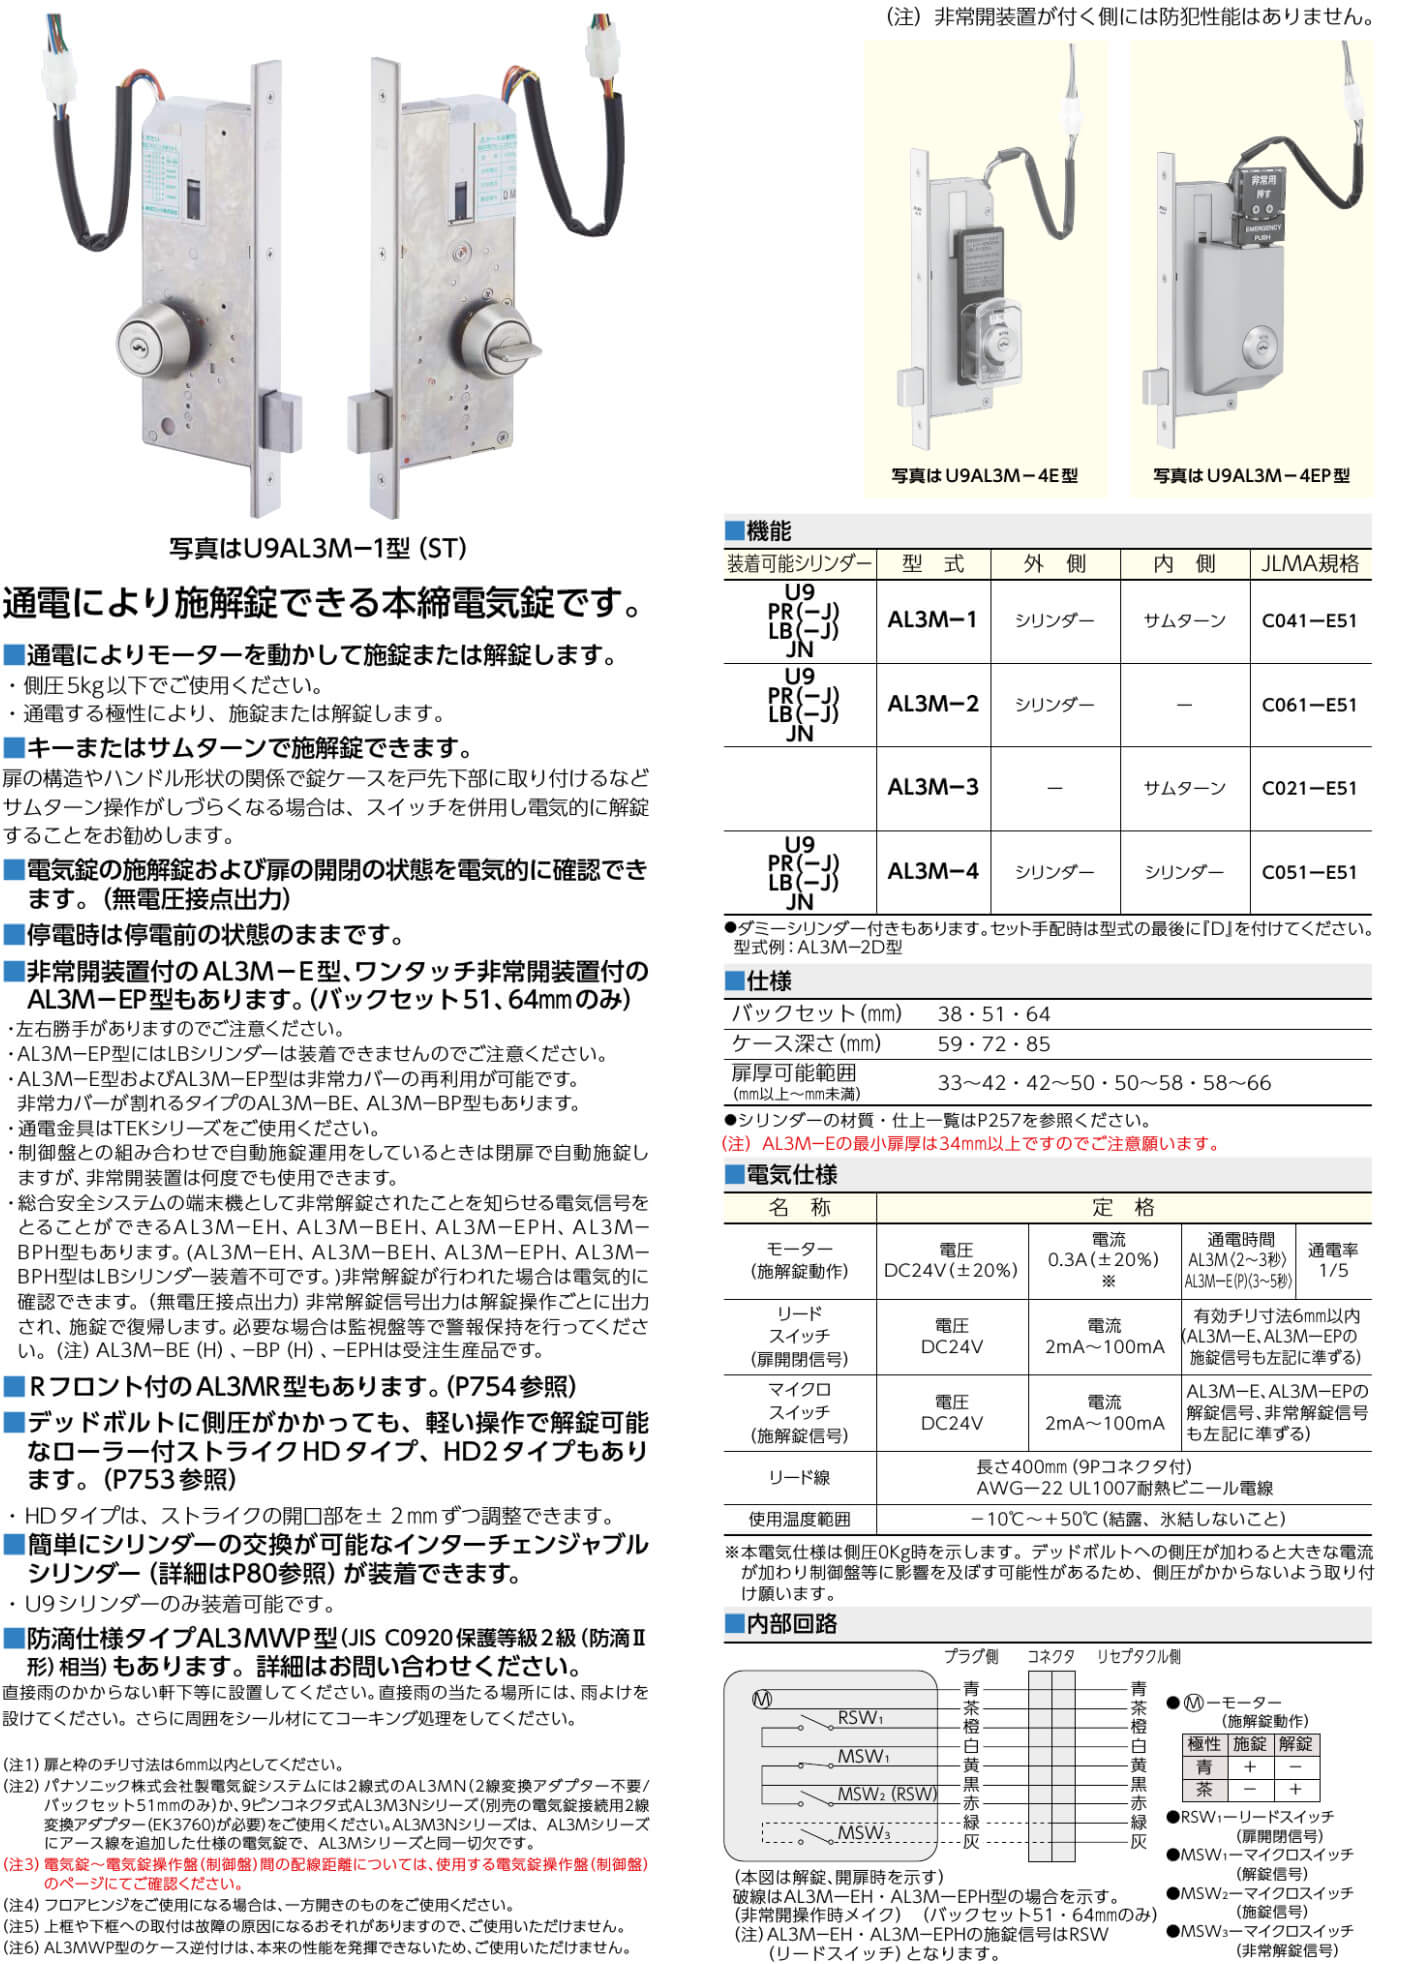 MIWA U9 AL3M-1【美和ロック/本締電気錠/モーター施解錠型】 / 鍵と 